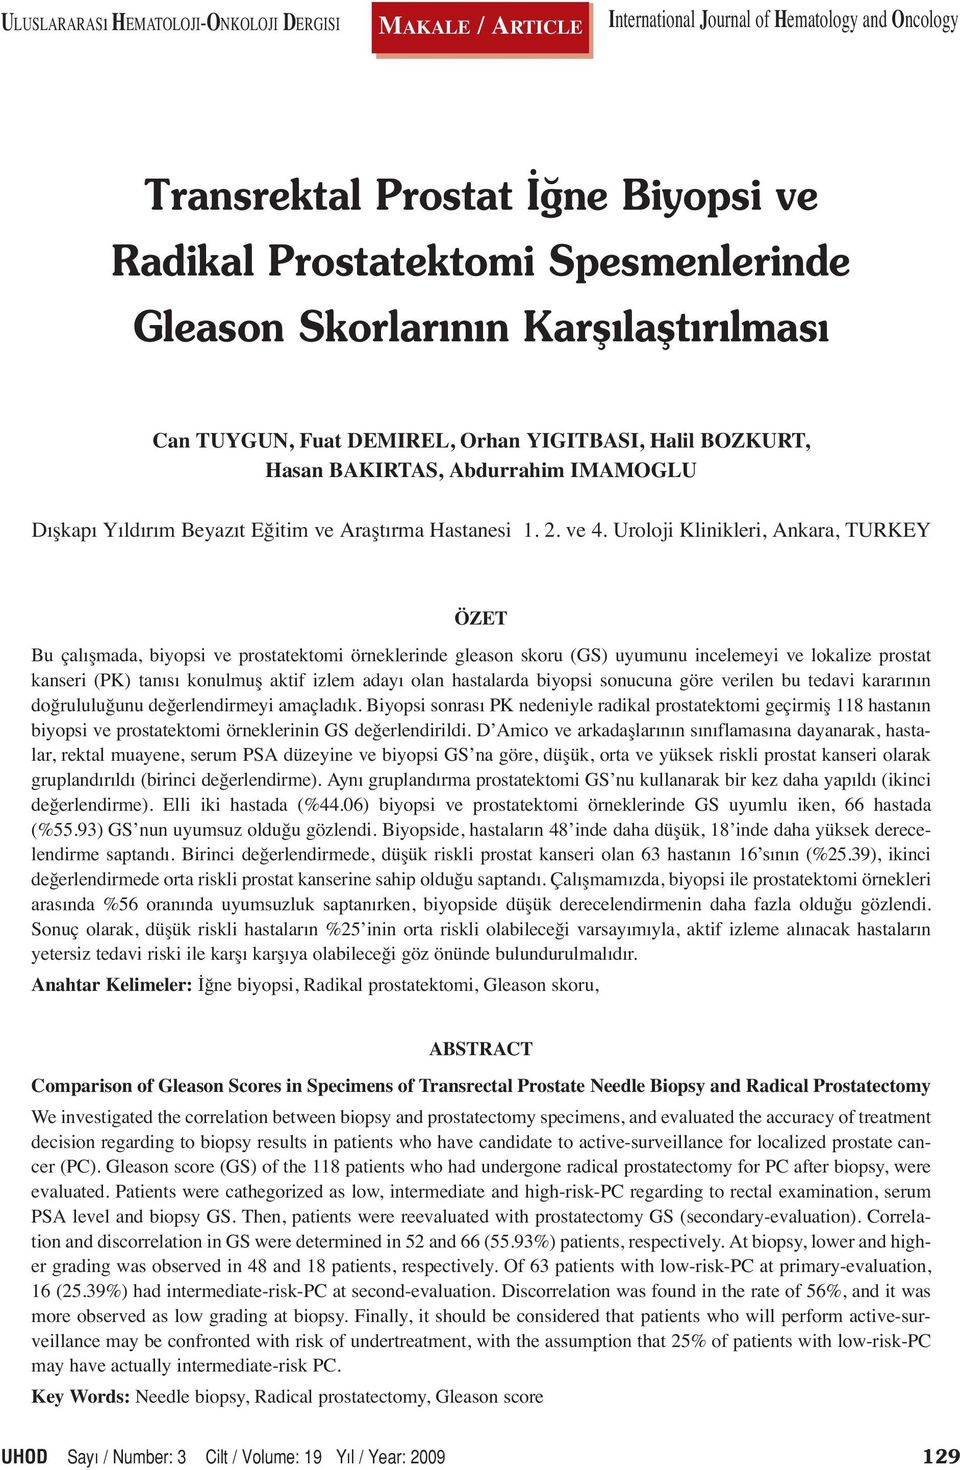 Uroloji Klinikleri, Ankara, TURKEY ÖZET Bu çalışmada, biyopsi ve prostatektomi örneklerinde gleason skoru (GS) uyumunu incelemeyi ve lokalize prostat kanseri (PK) tanısı konulmuş aktif izlem adayı